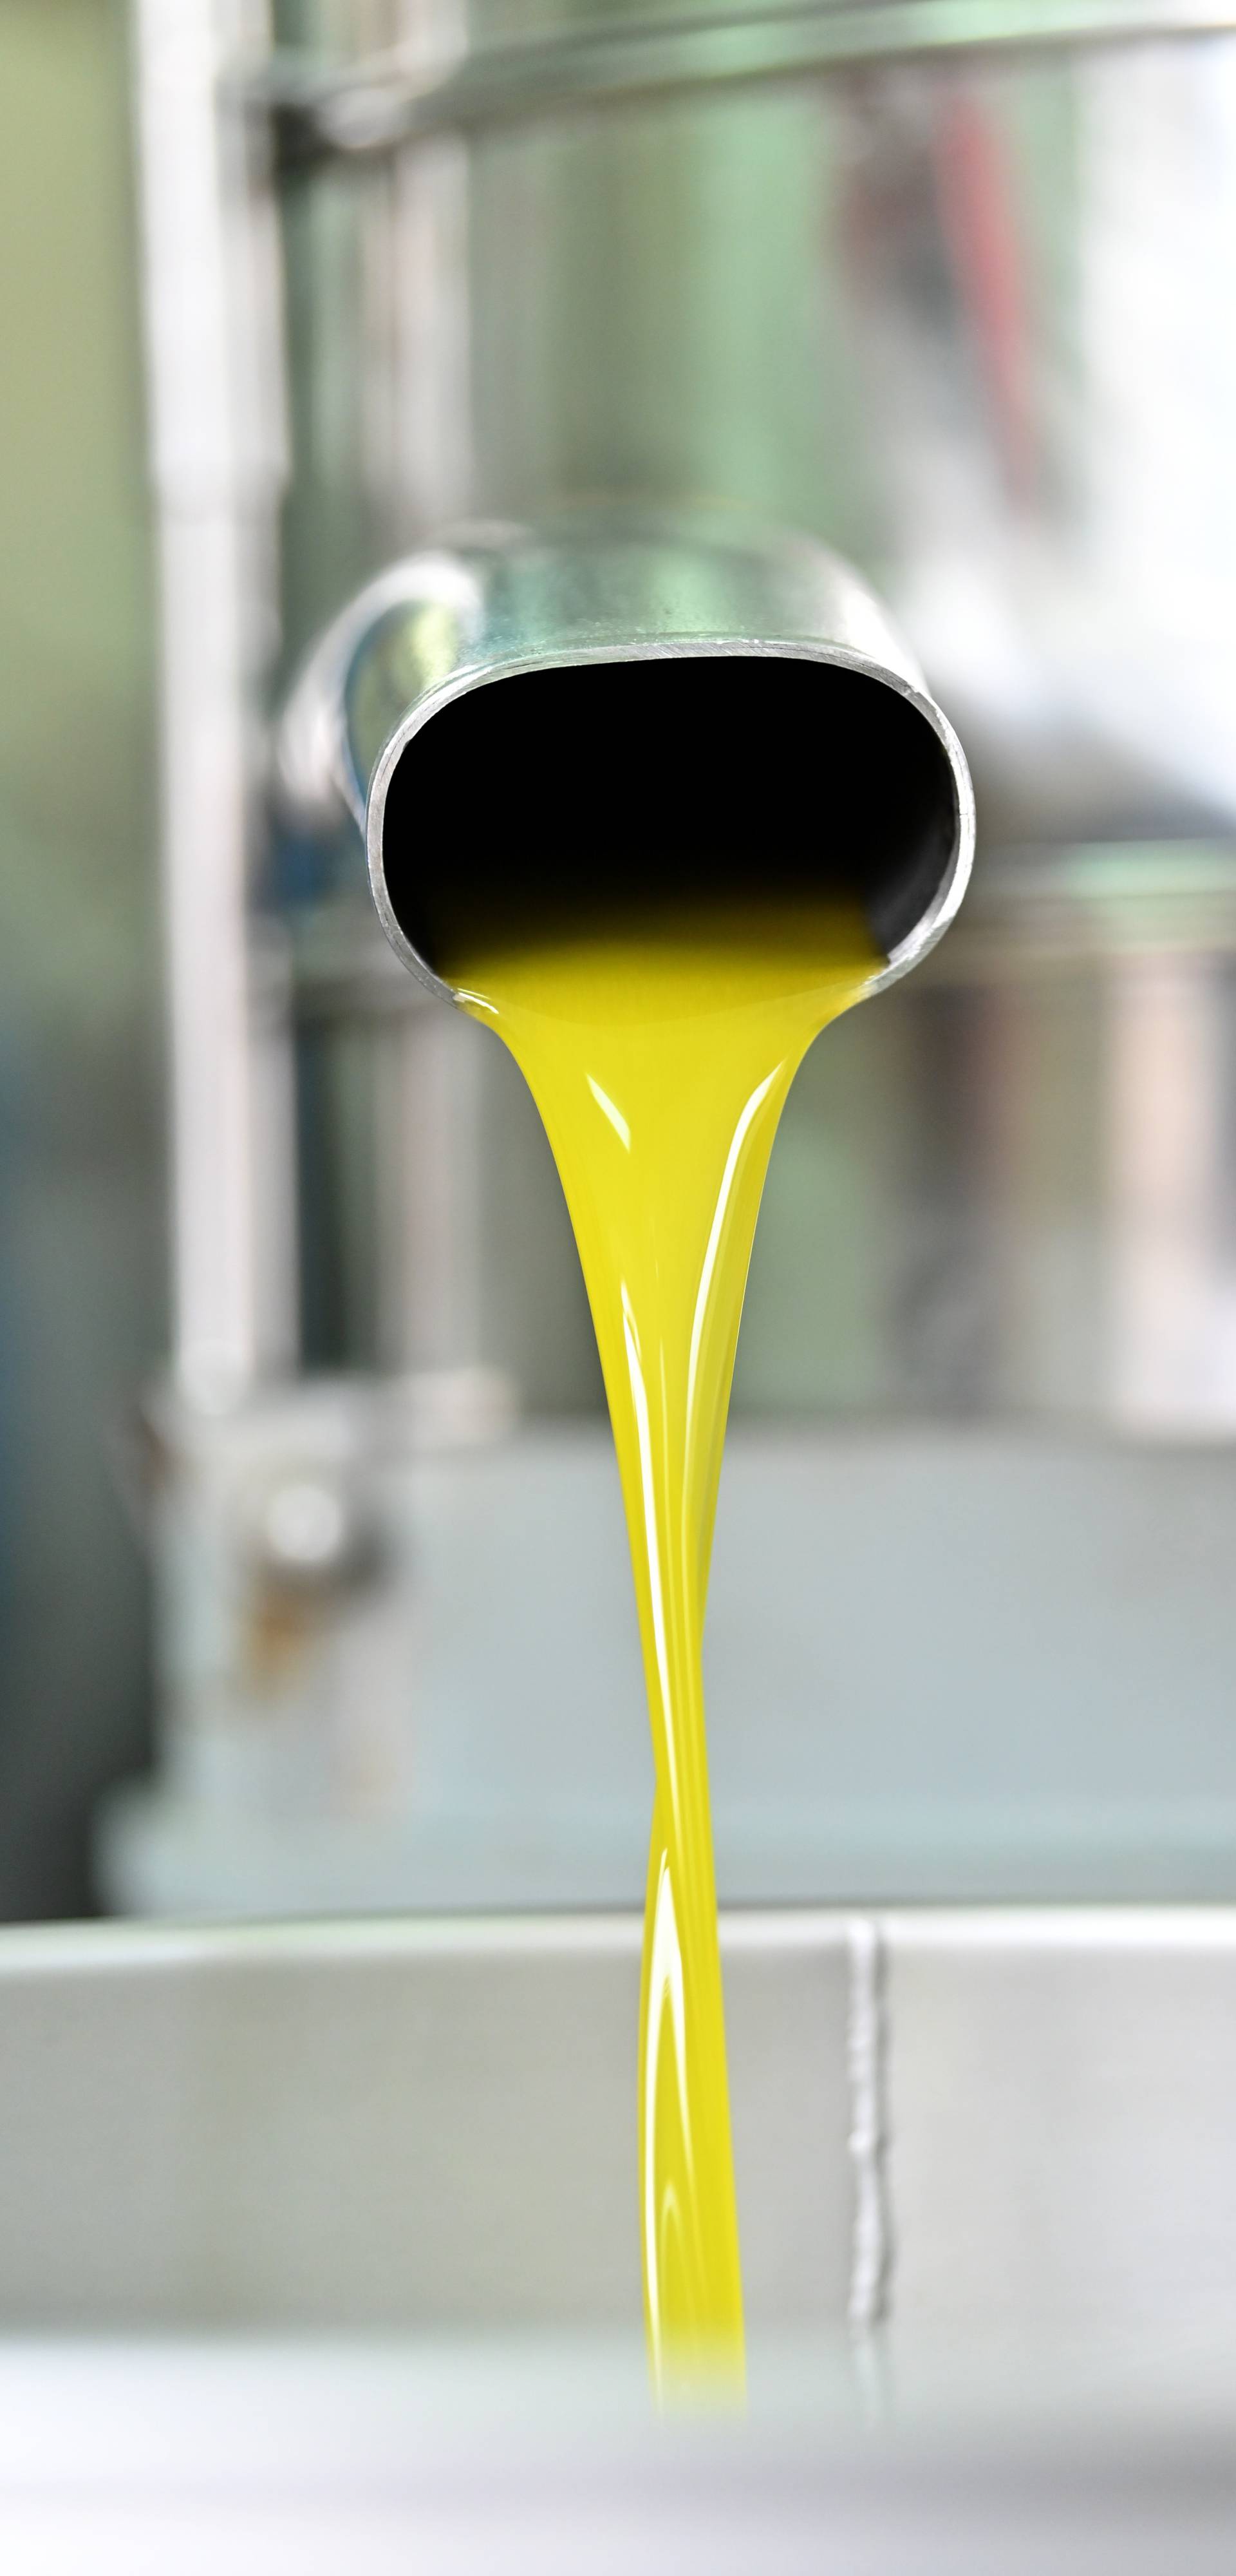 Proces proizvodnje maslinovog ulja u uljarskoj zadruzi Igrane